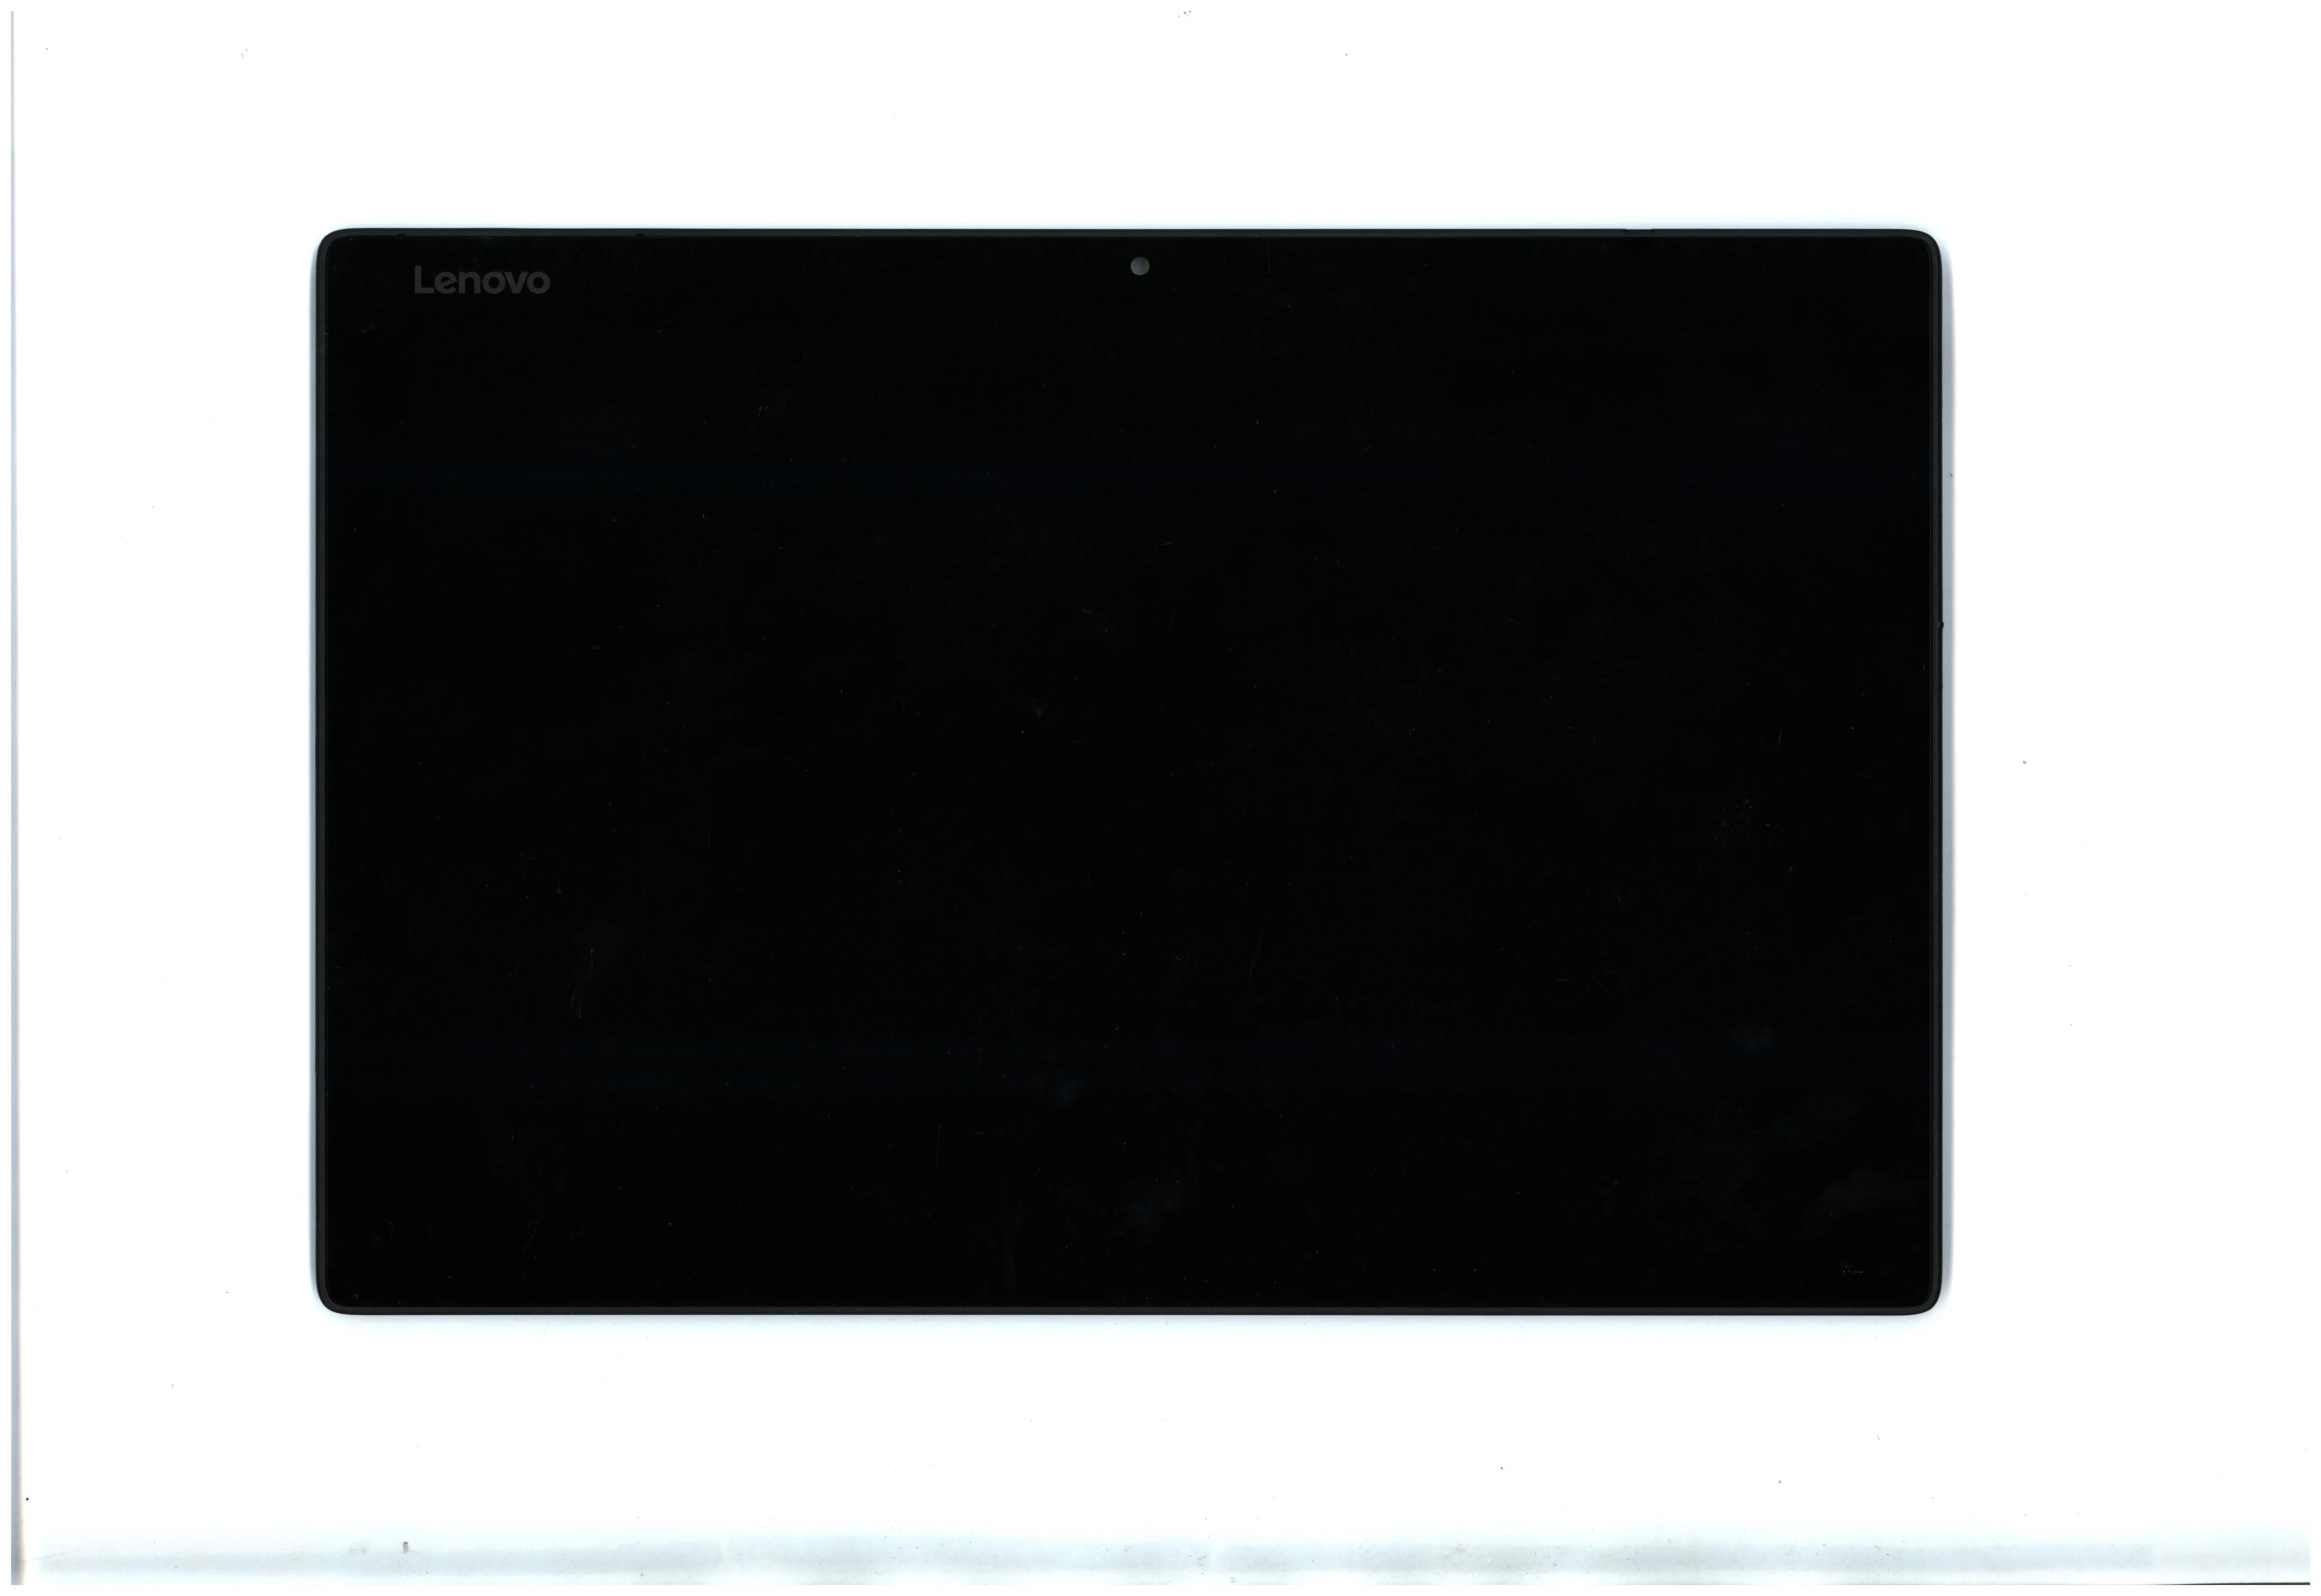 레노버 태블릿 Miix 520-12IKB FHD 터치 LCD 화면 5D10P92363 용 새 원본 노트북 화면